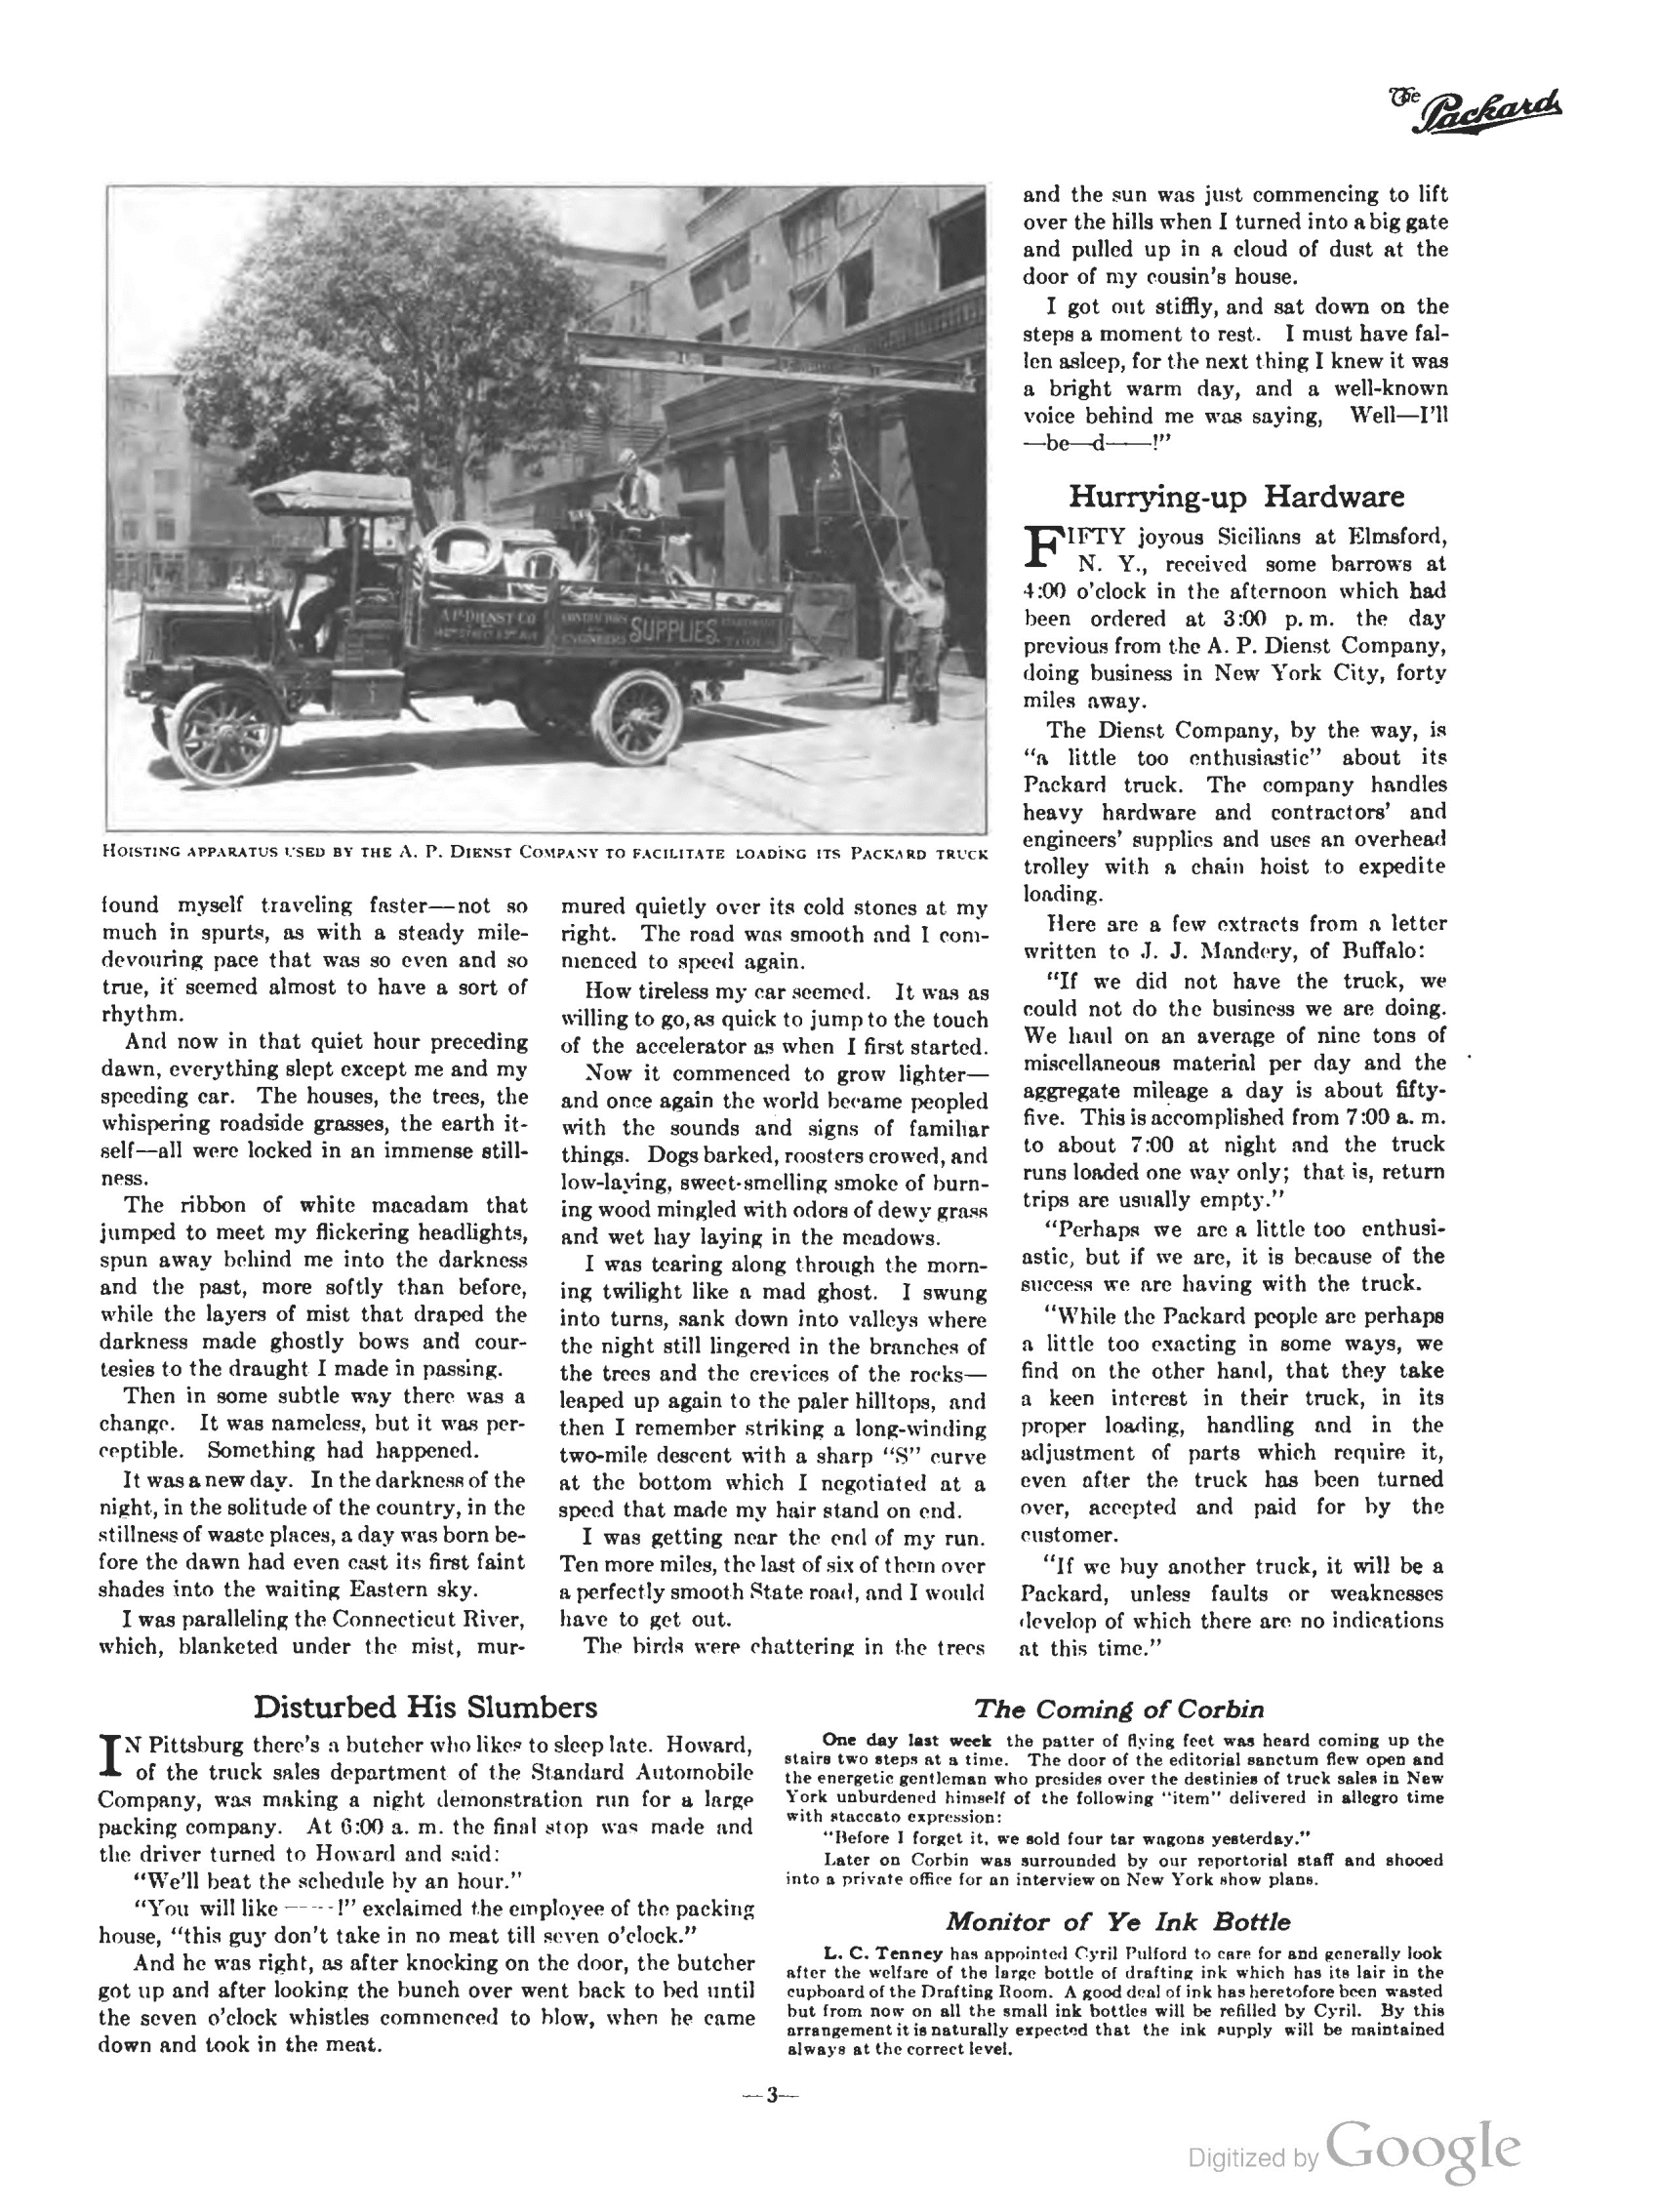 1910_The_Packard_Newsletter-197